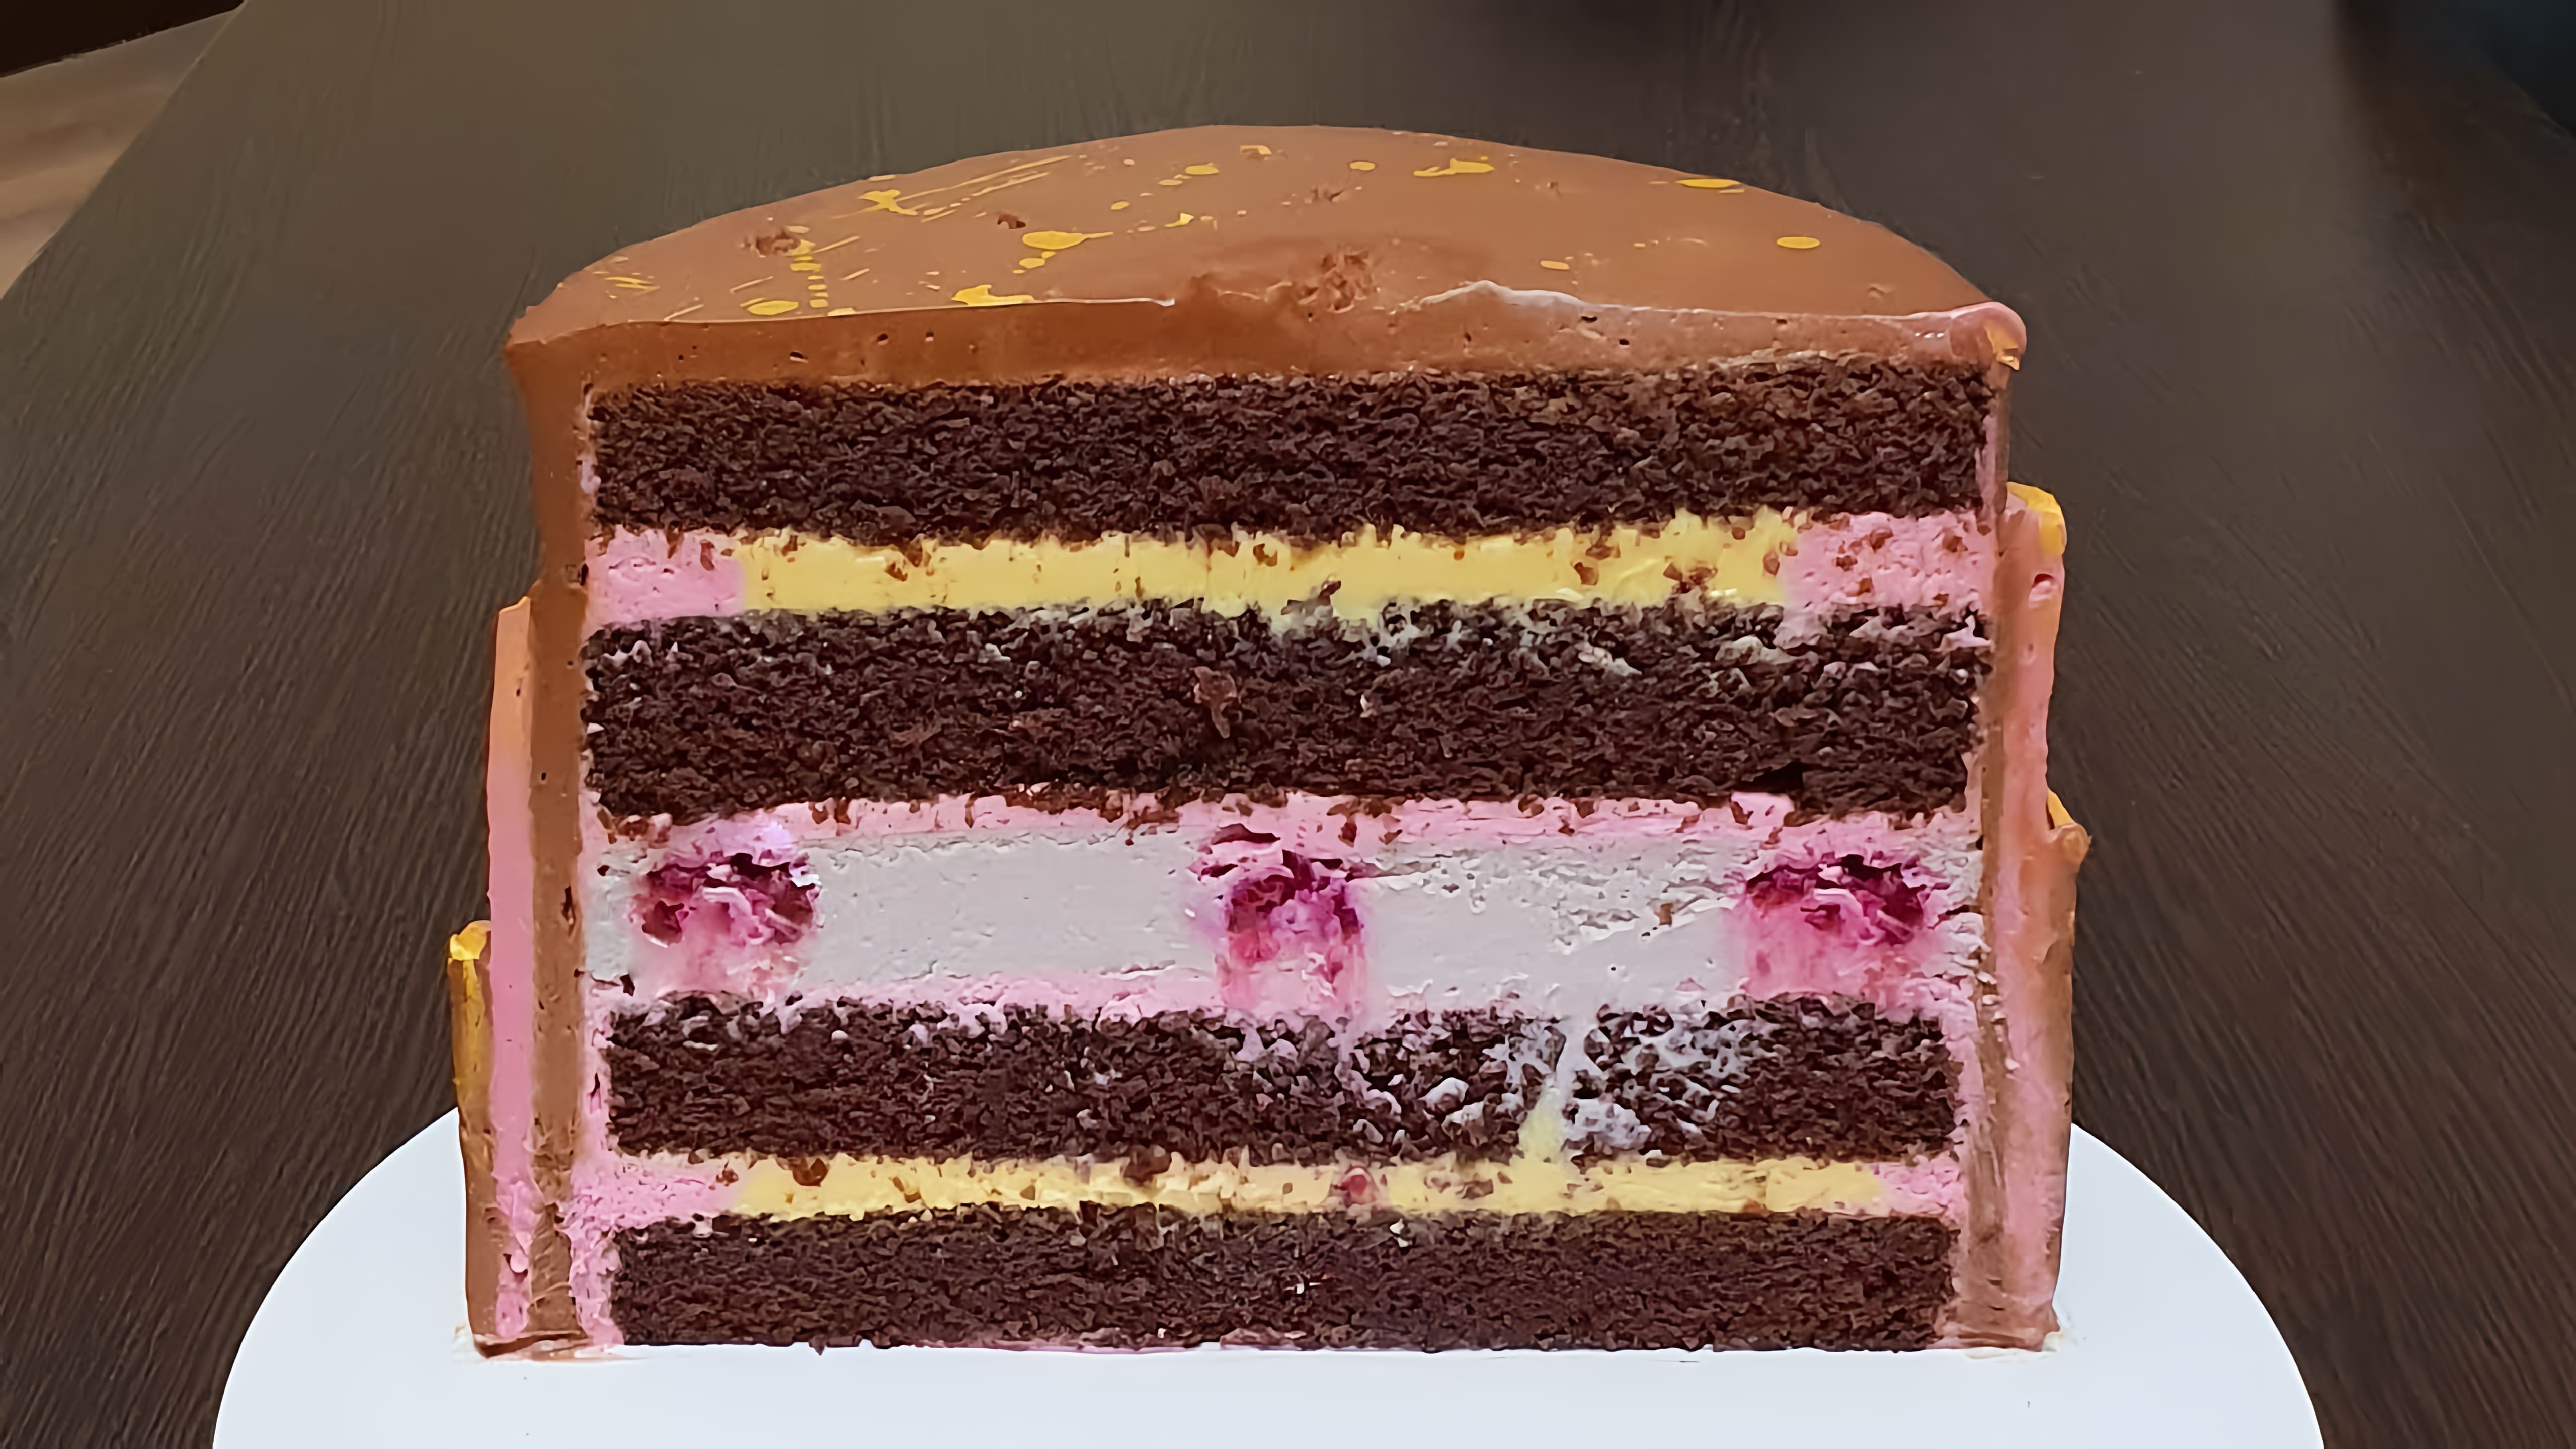 В этом видео демонстрируется рецепт торта с шоколадными коржами, малиновым чизкейком и малиновым кремом